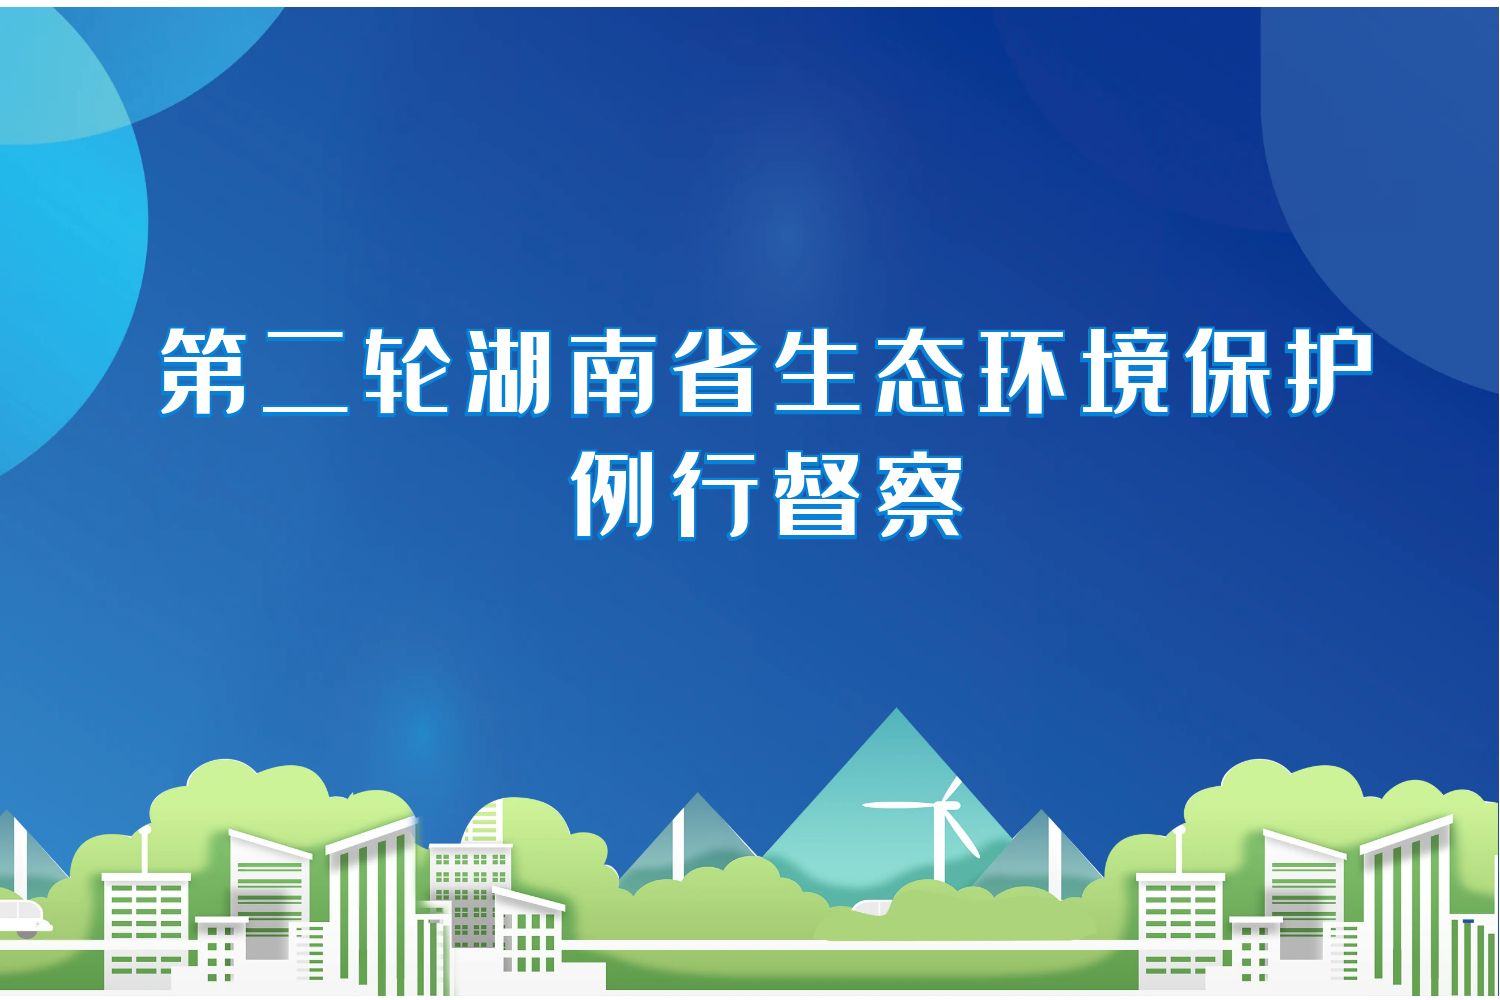 第二轮湖南省生态环境保护例行督察